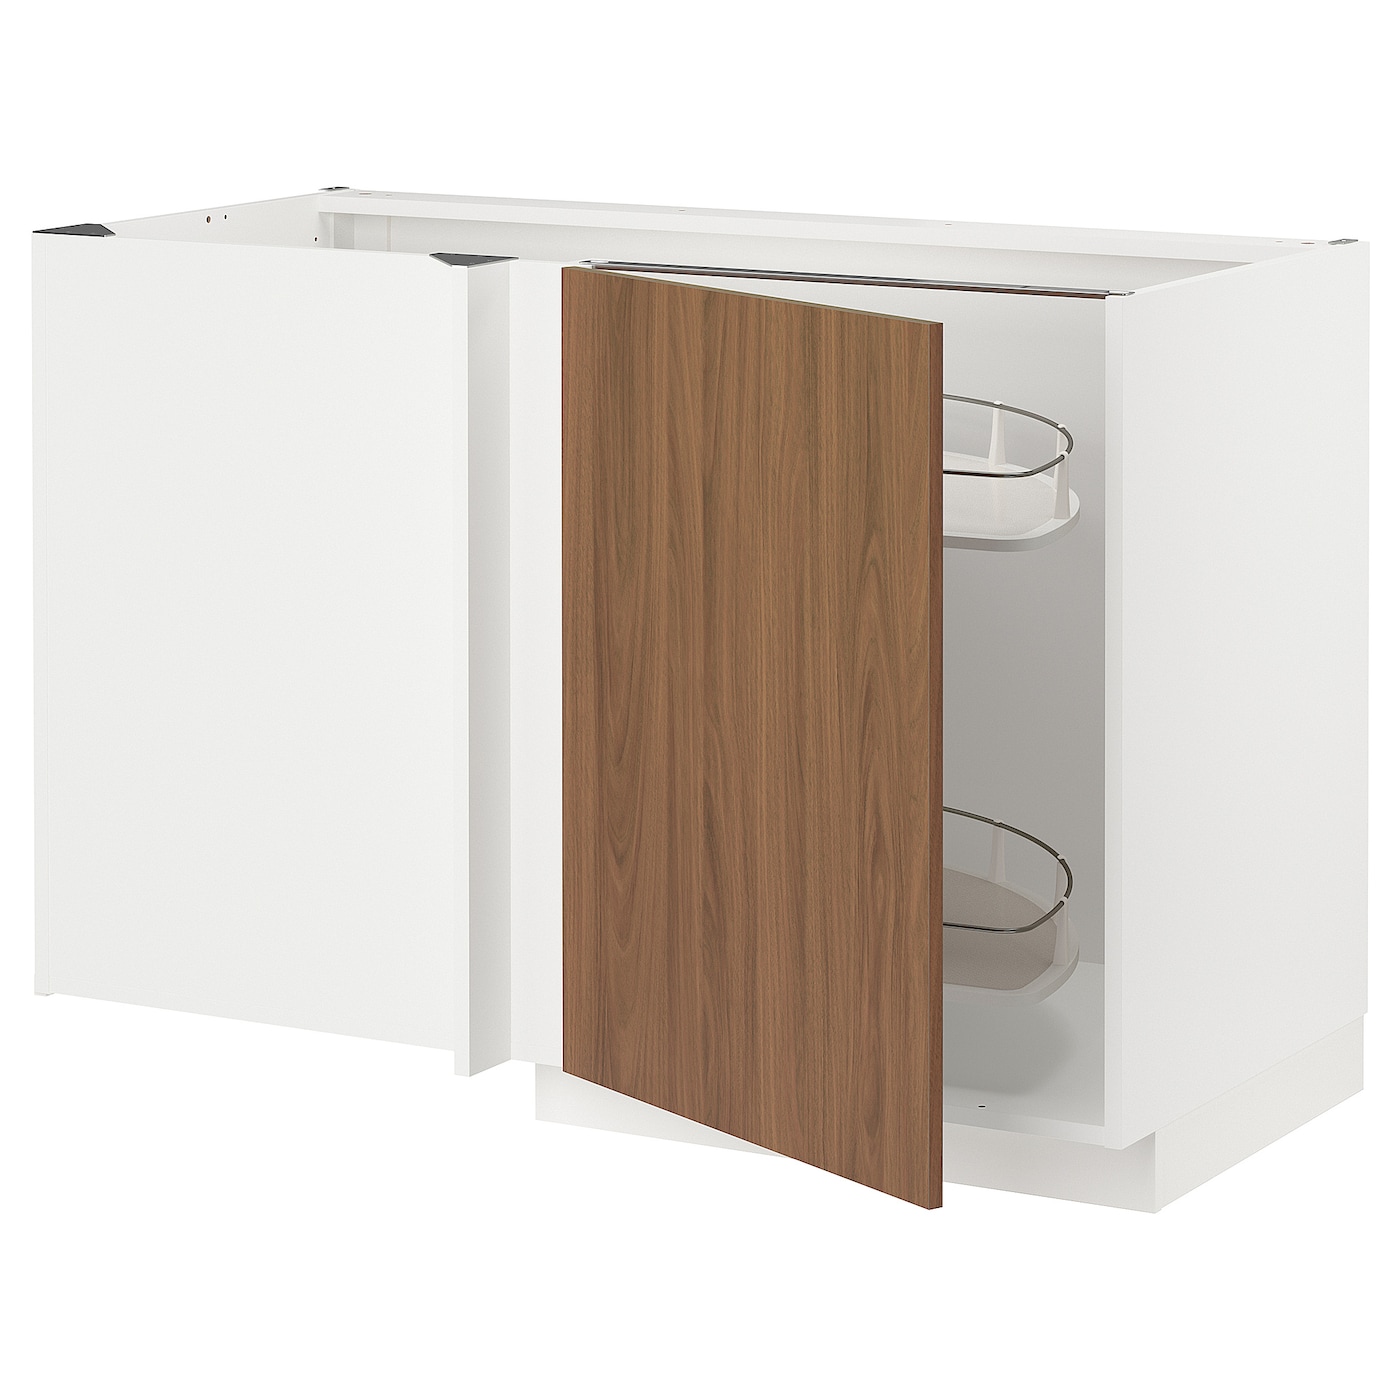 Напольный шкаф - METOD IKEA/ МЕТОД ИКЕА,  128х68 см, белый/коричневый